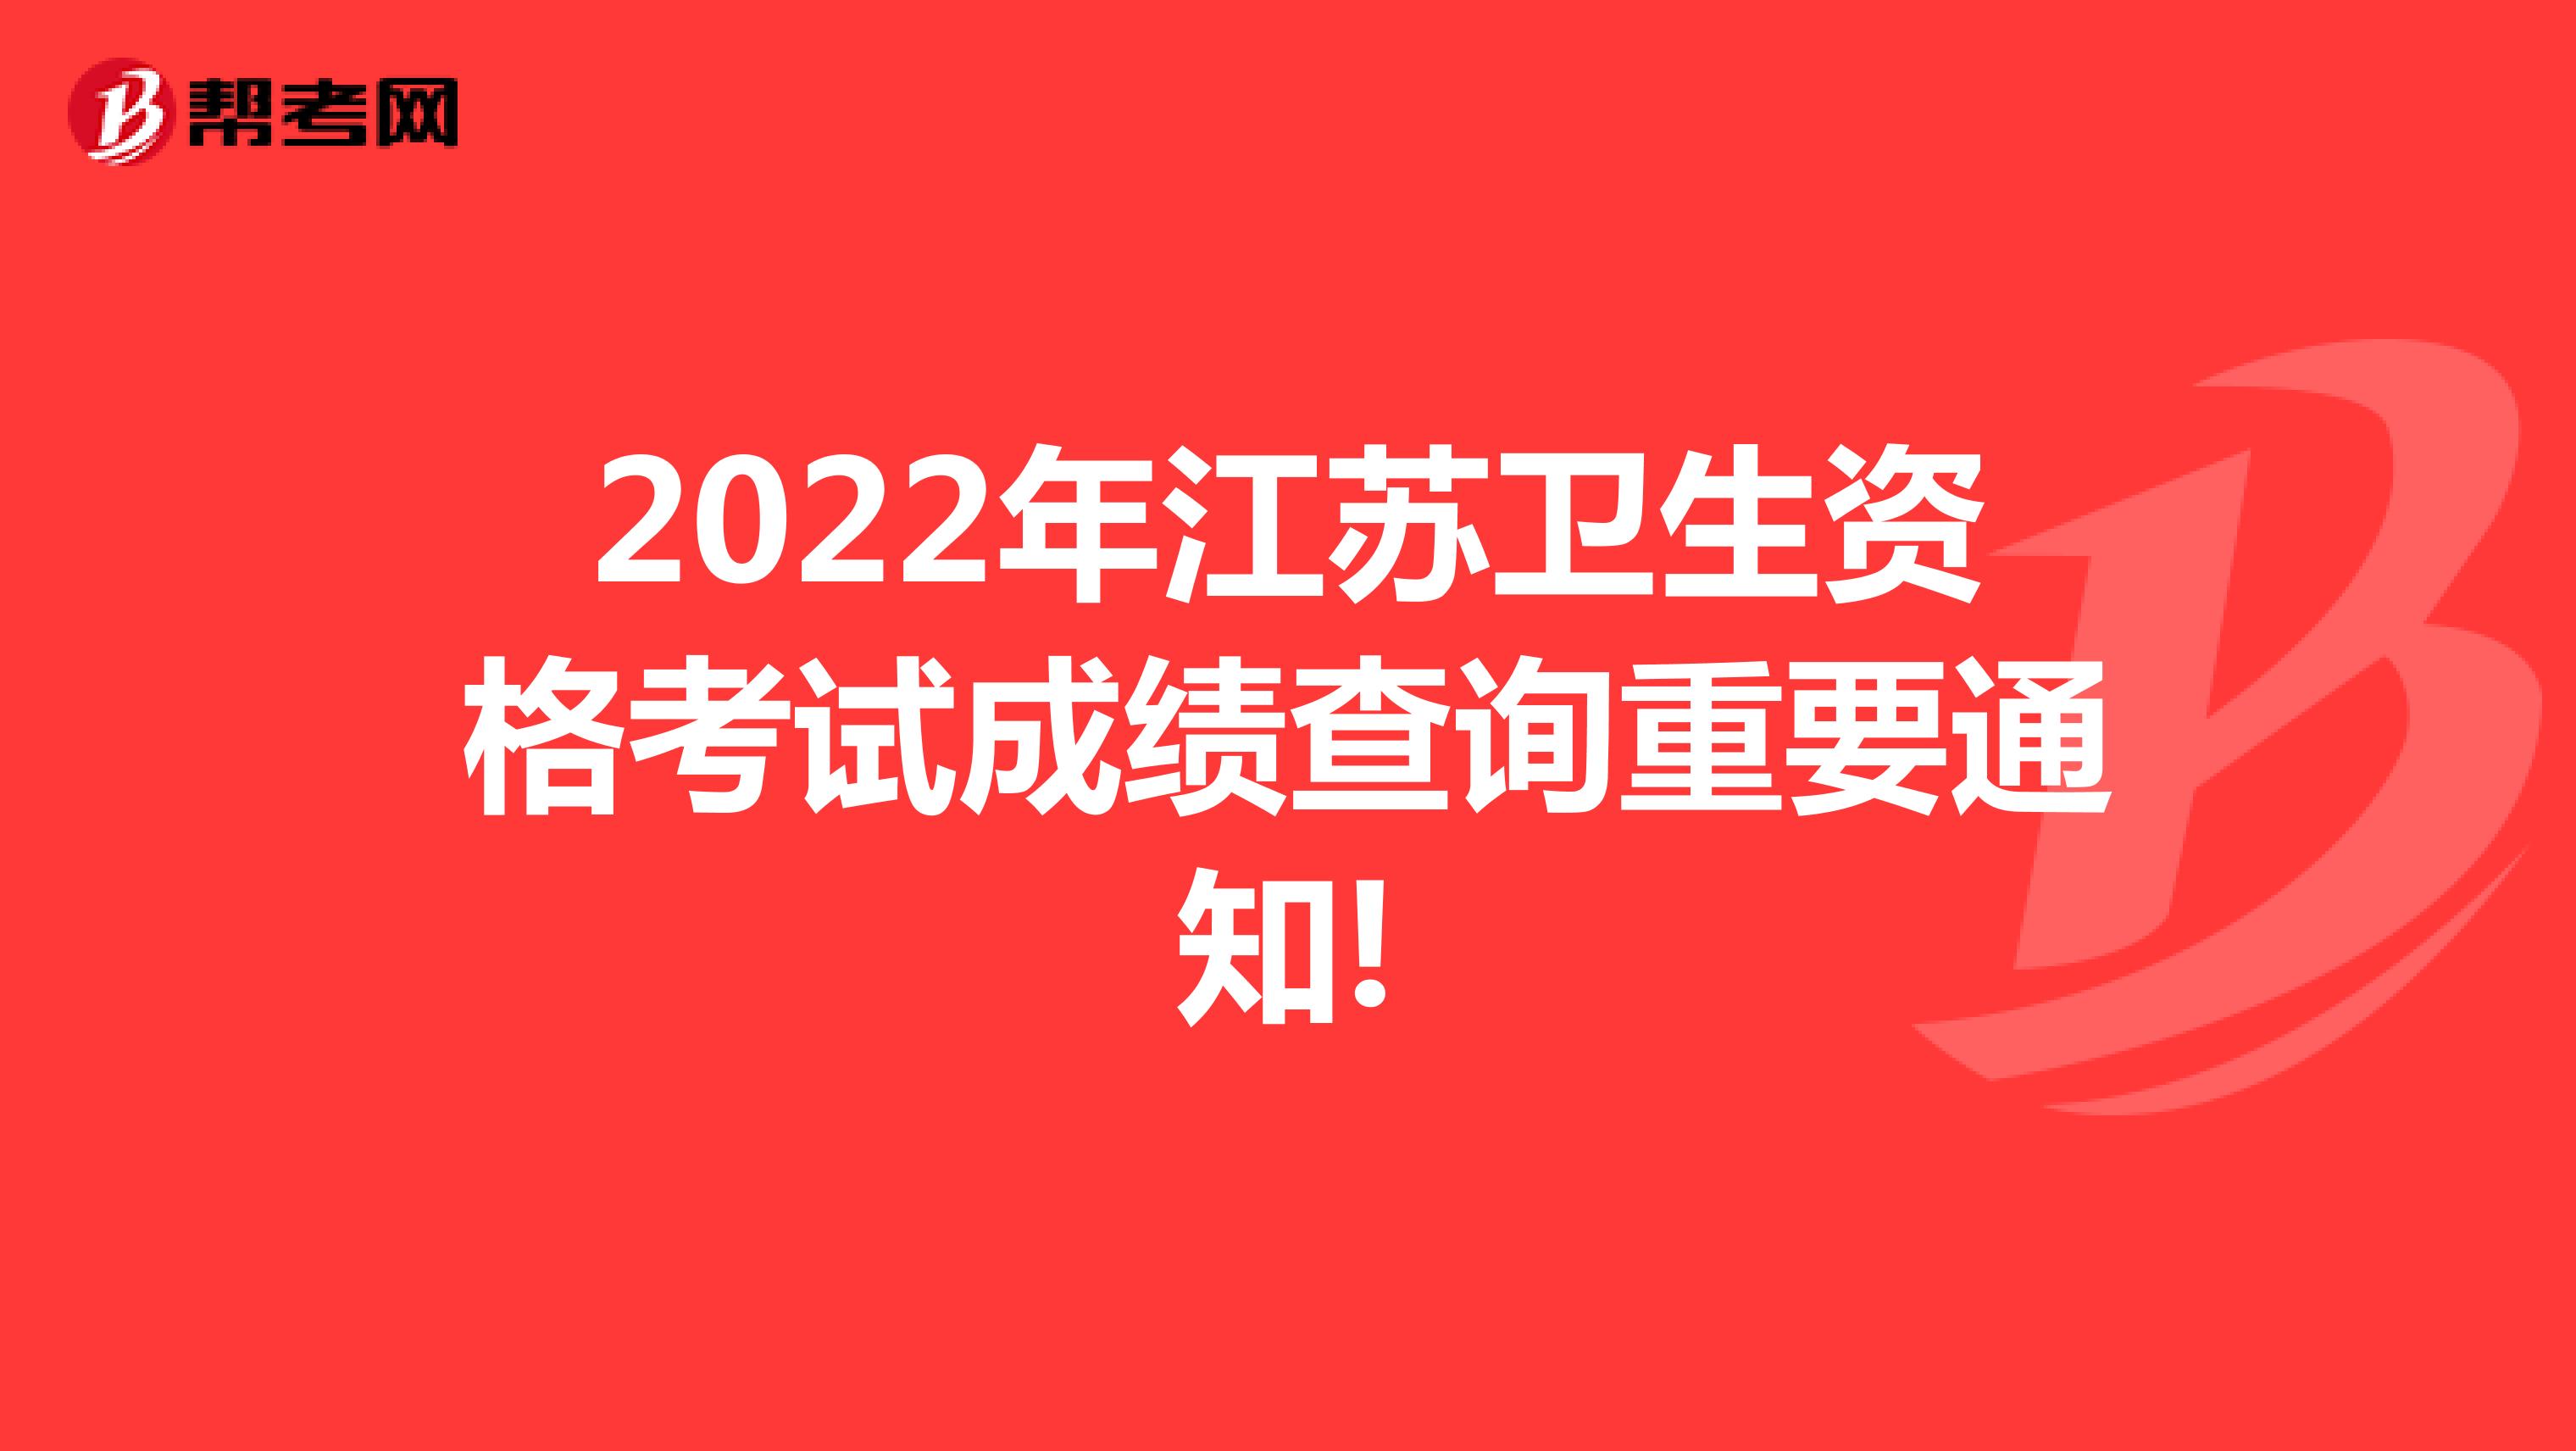 2022年江苏卫生资格考试成绩查询重要通知!